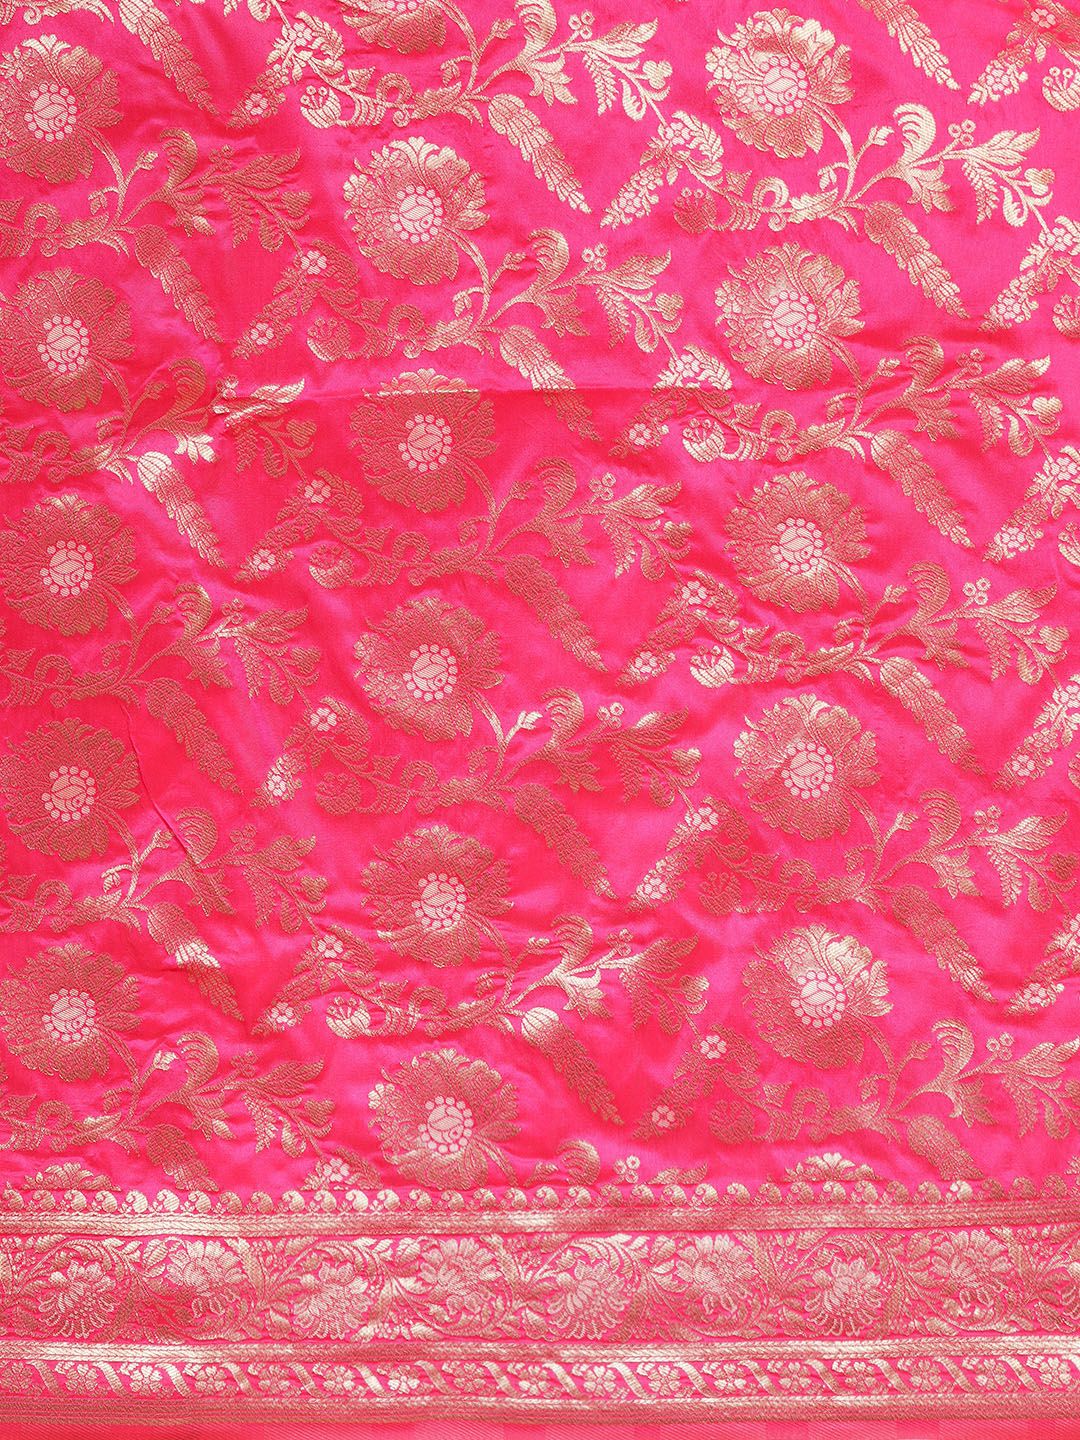 Pink Color Designer Banarasi Silk Saree With Weaving Zari Work